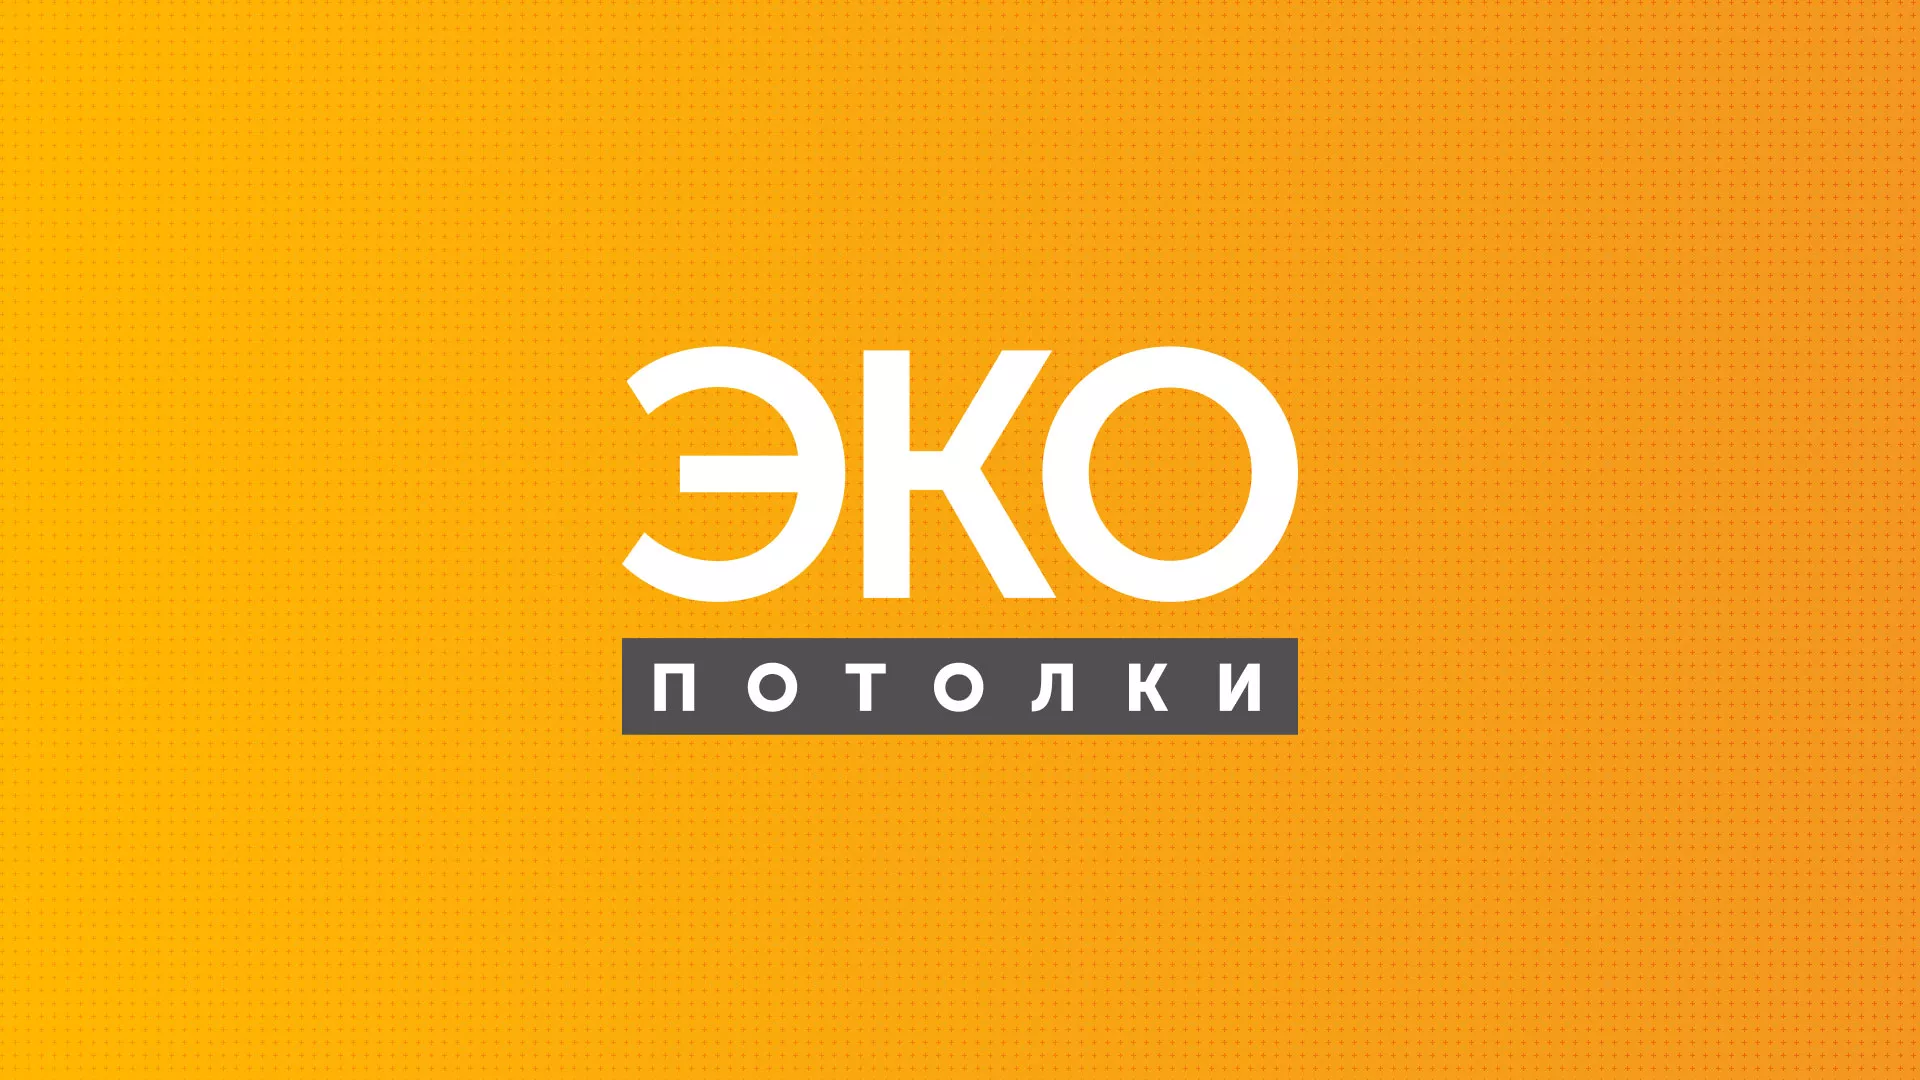 Разработка сайта по натяжным потолкам «Эко Потолки» в Владимире